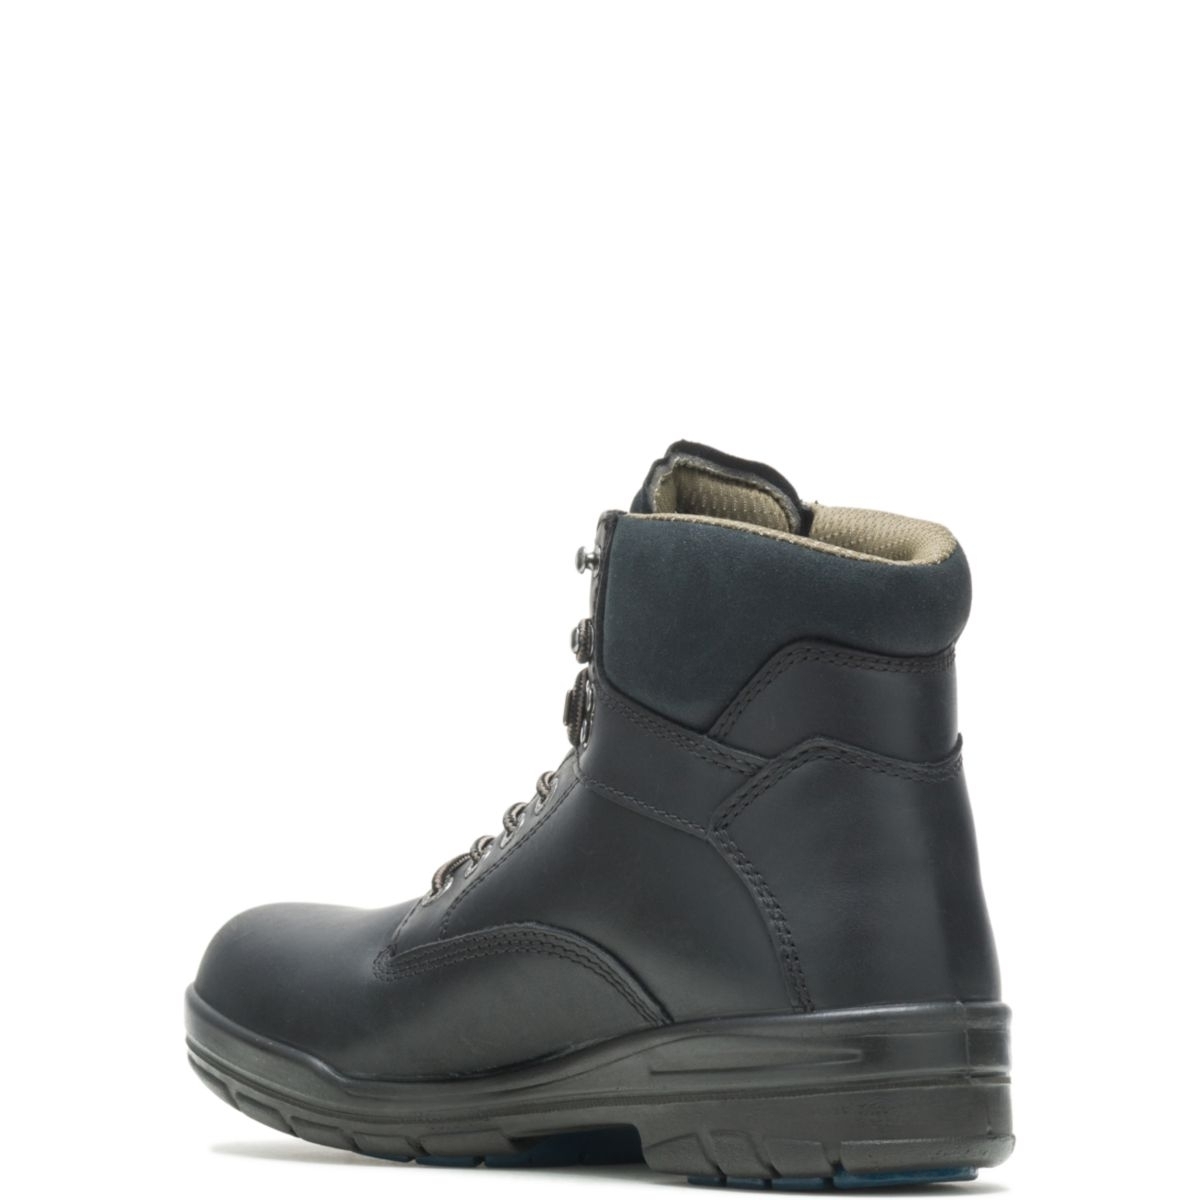 WOLVERINE Men's 6 DuraShocksÂ® Slip Resistant Direct-Attached Lined Soft Toe Work Boot Black - W03123 14 WIDE BLACK - BLACK, 7.5